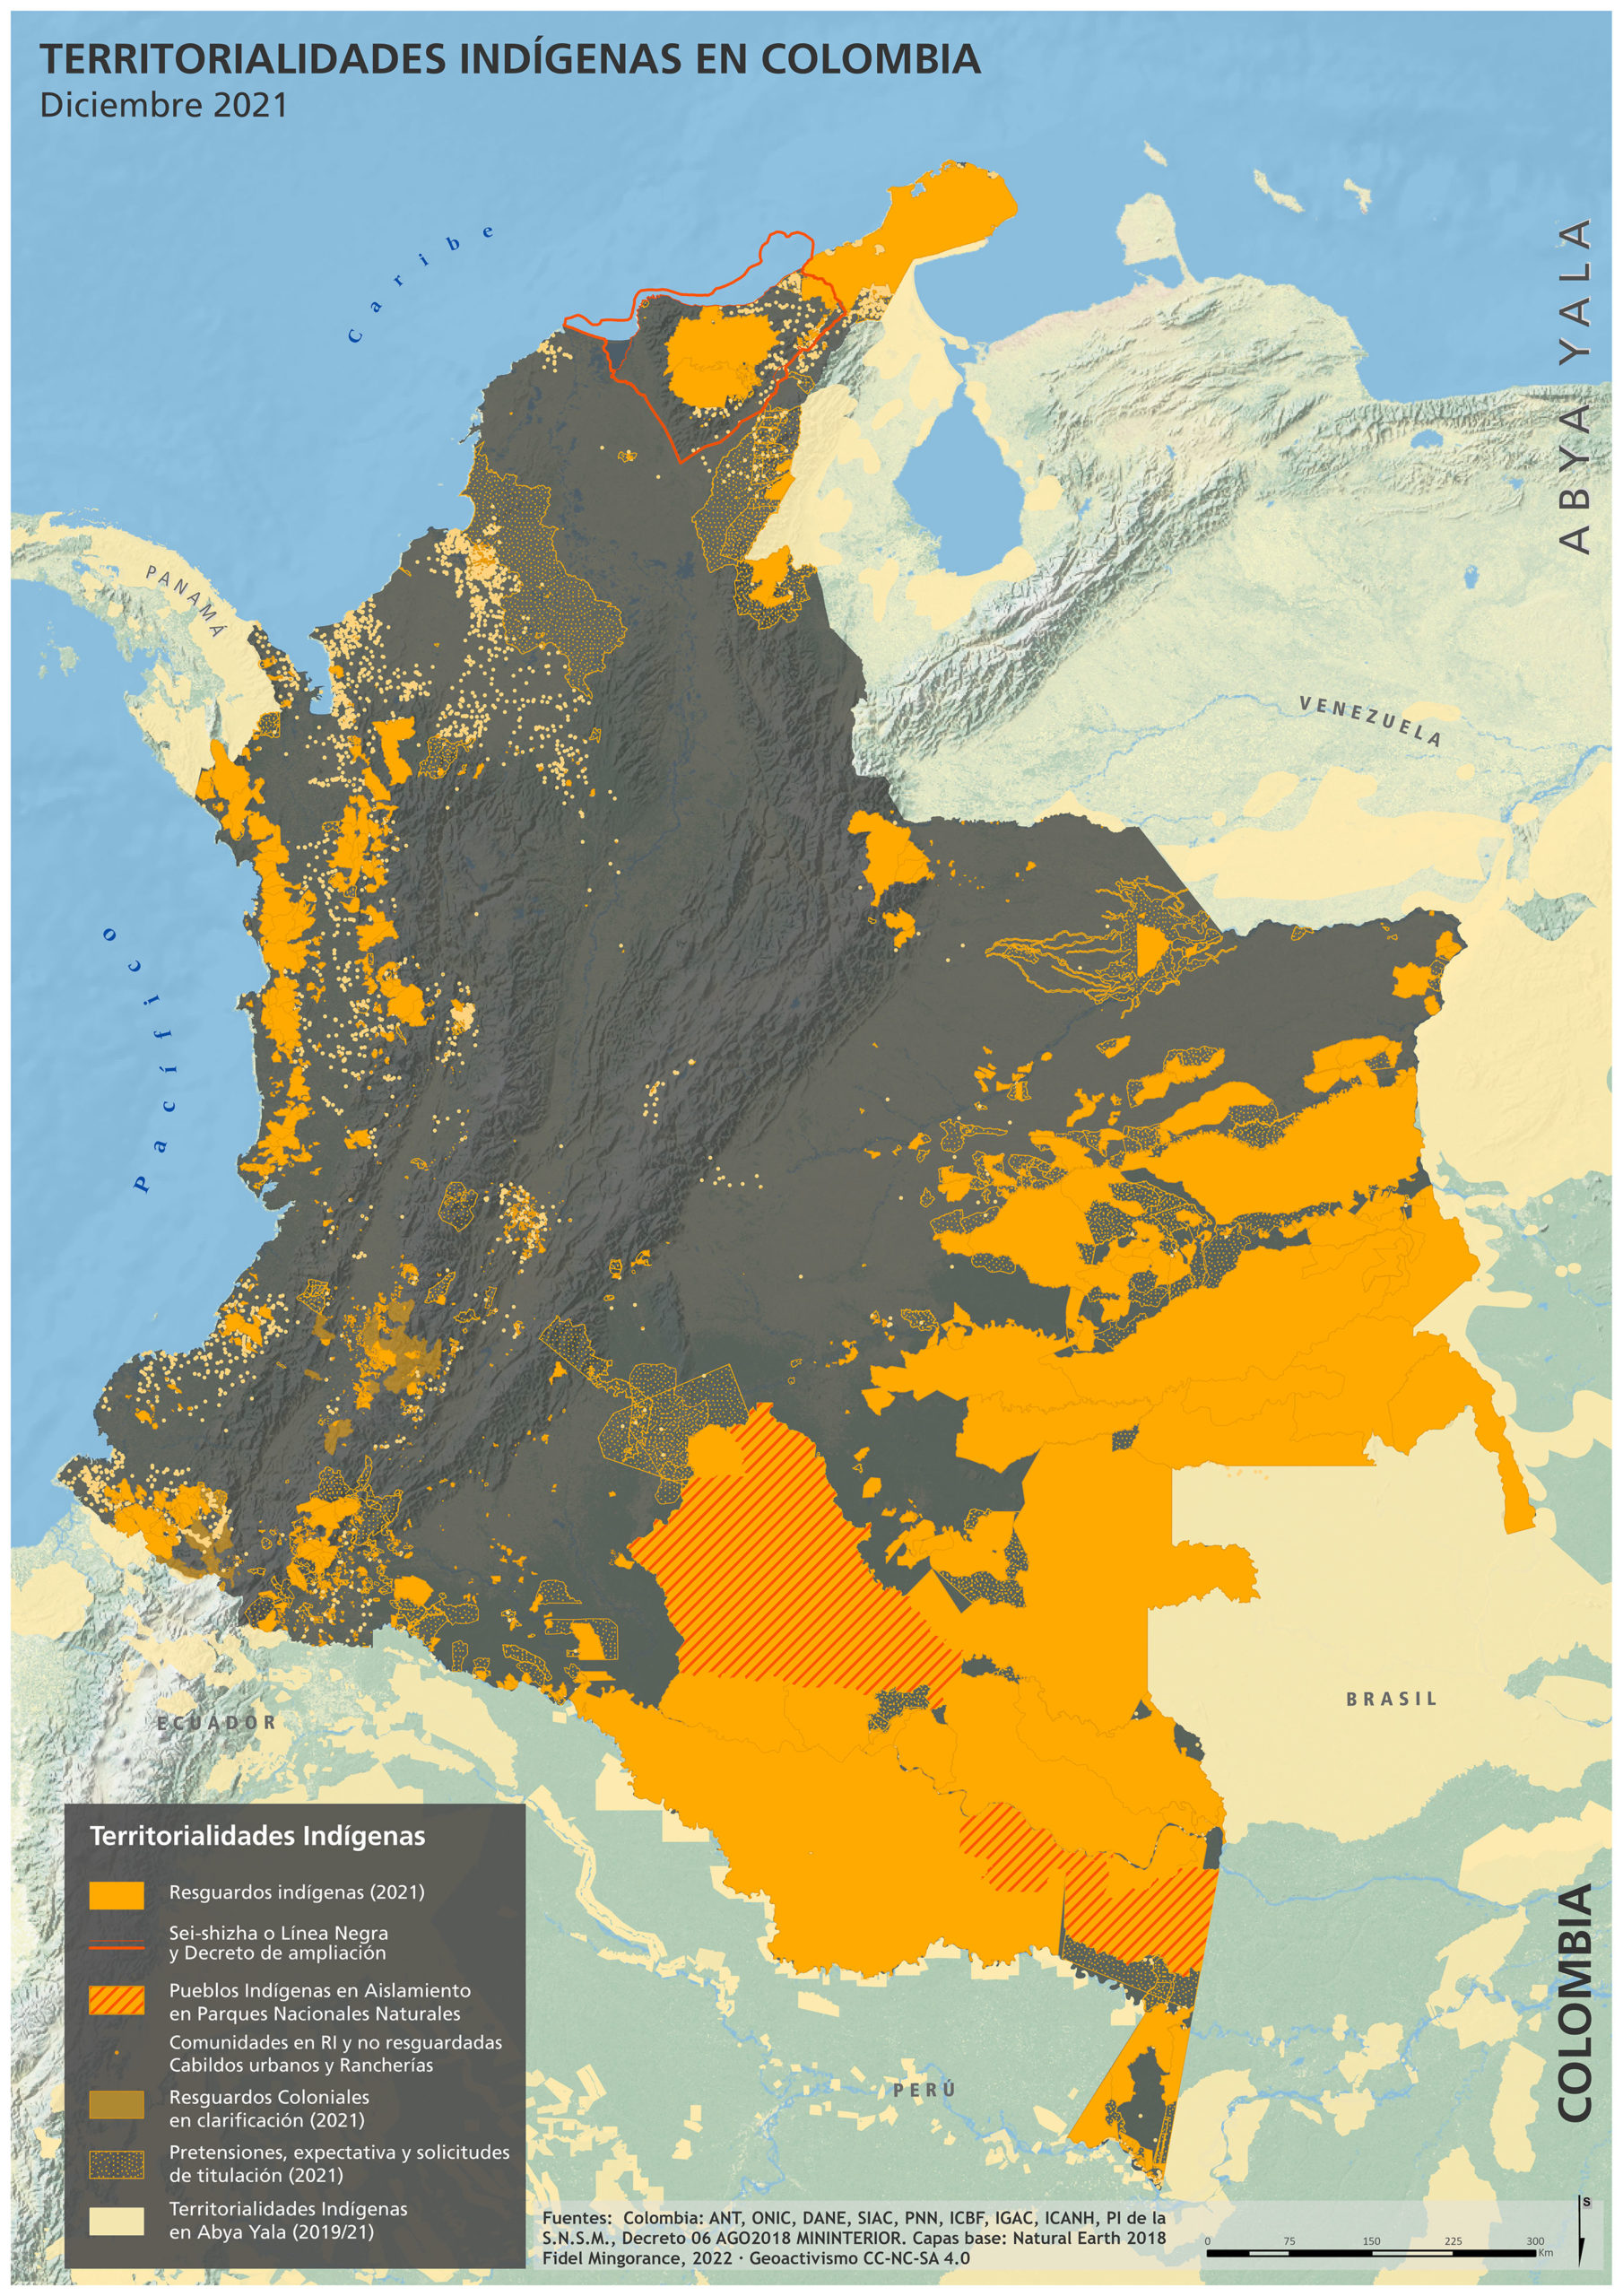 Territorialidades indigenas en Colombia 2021